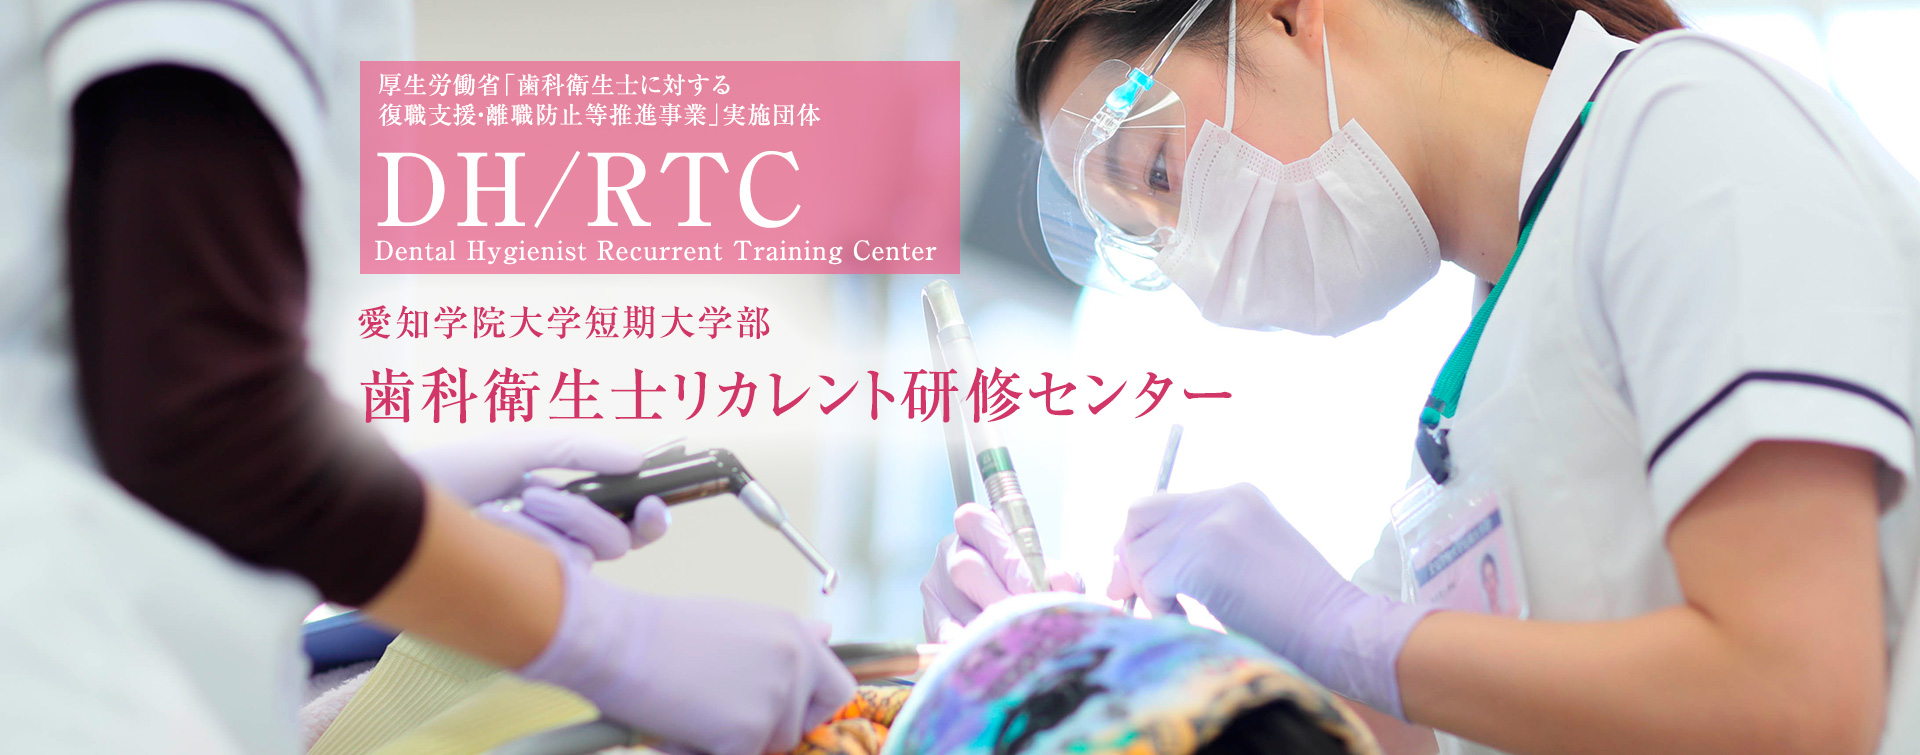 DH/RTC 愛知学院大学短期大学部 歯科衛生士リカレント研修センター